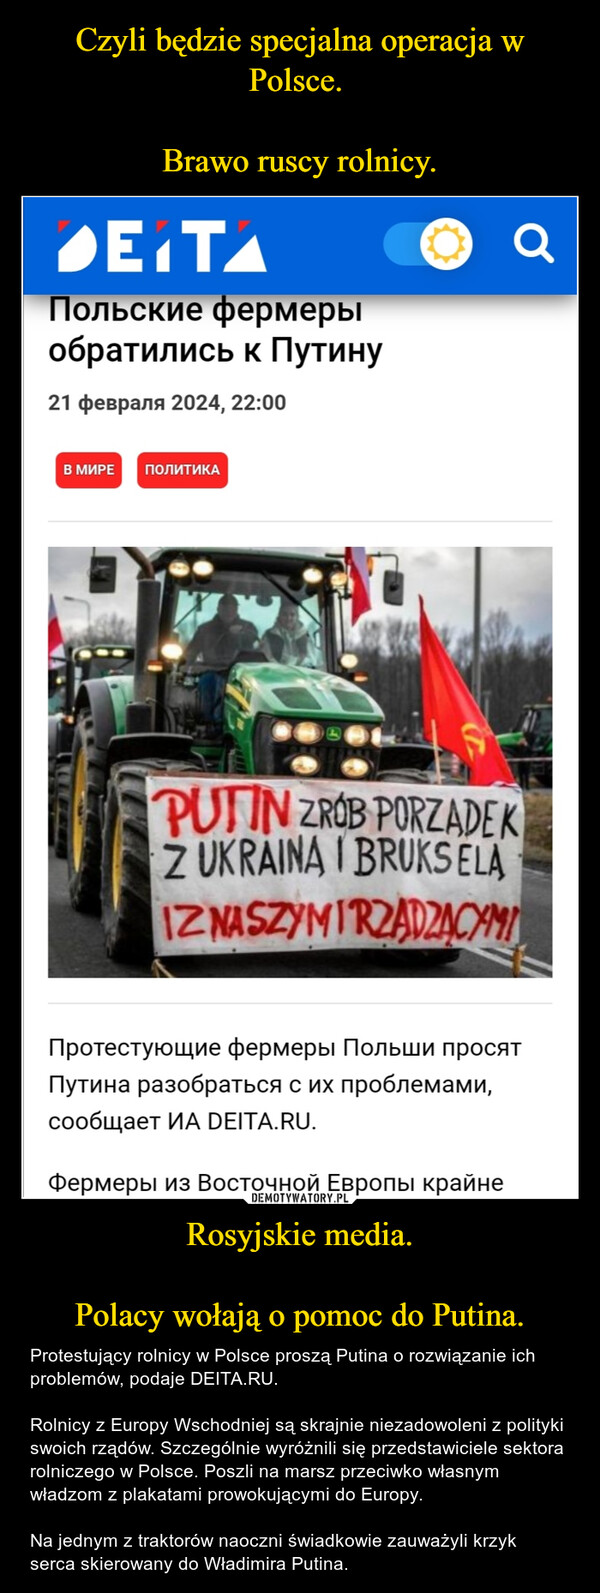 Czyli będzie specjalna operacja w Polsce. 

Brawo ruscy rolnicy. Rosyjskie media.

Polacy wołają o pomoc do Putina.